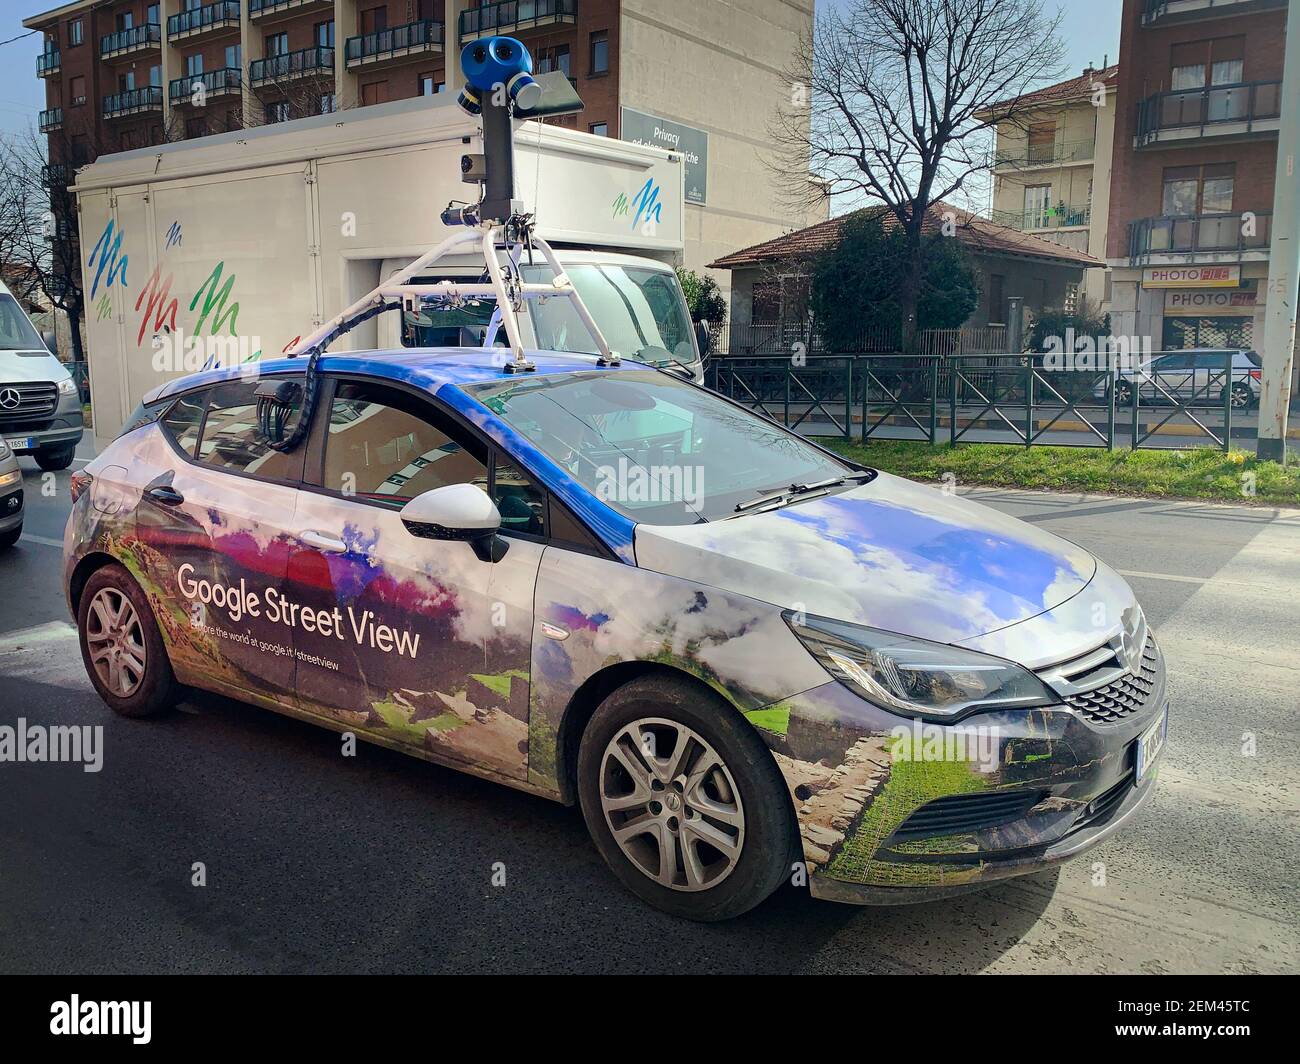 Ein Google Street View Fahrzeug für die Kartierung von Straßen in der ganzen Welt fährt durch die Stadt. Turin, Italien - Januar 2021 Stockfoto